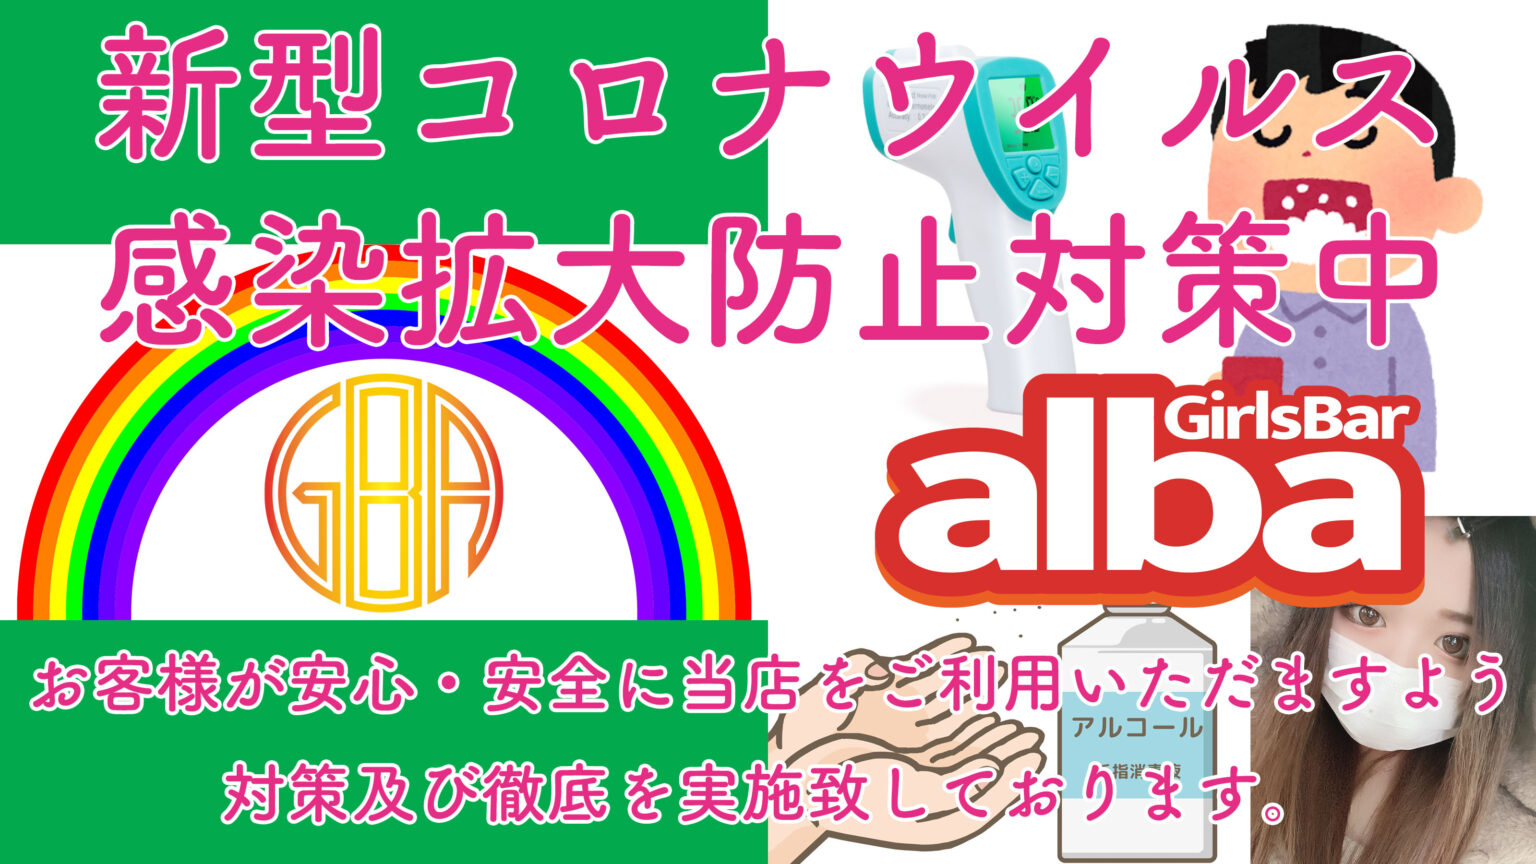 コロナウイルス対策実施中！ - 歌舞伎町 ガールズバー Girls Bar alba アルバ